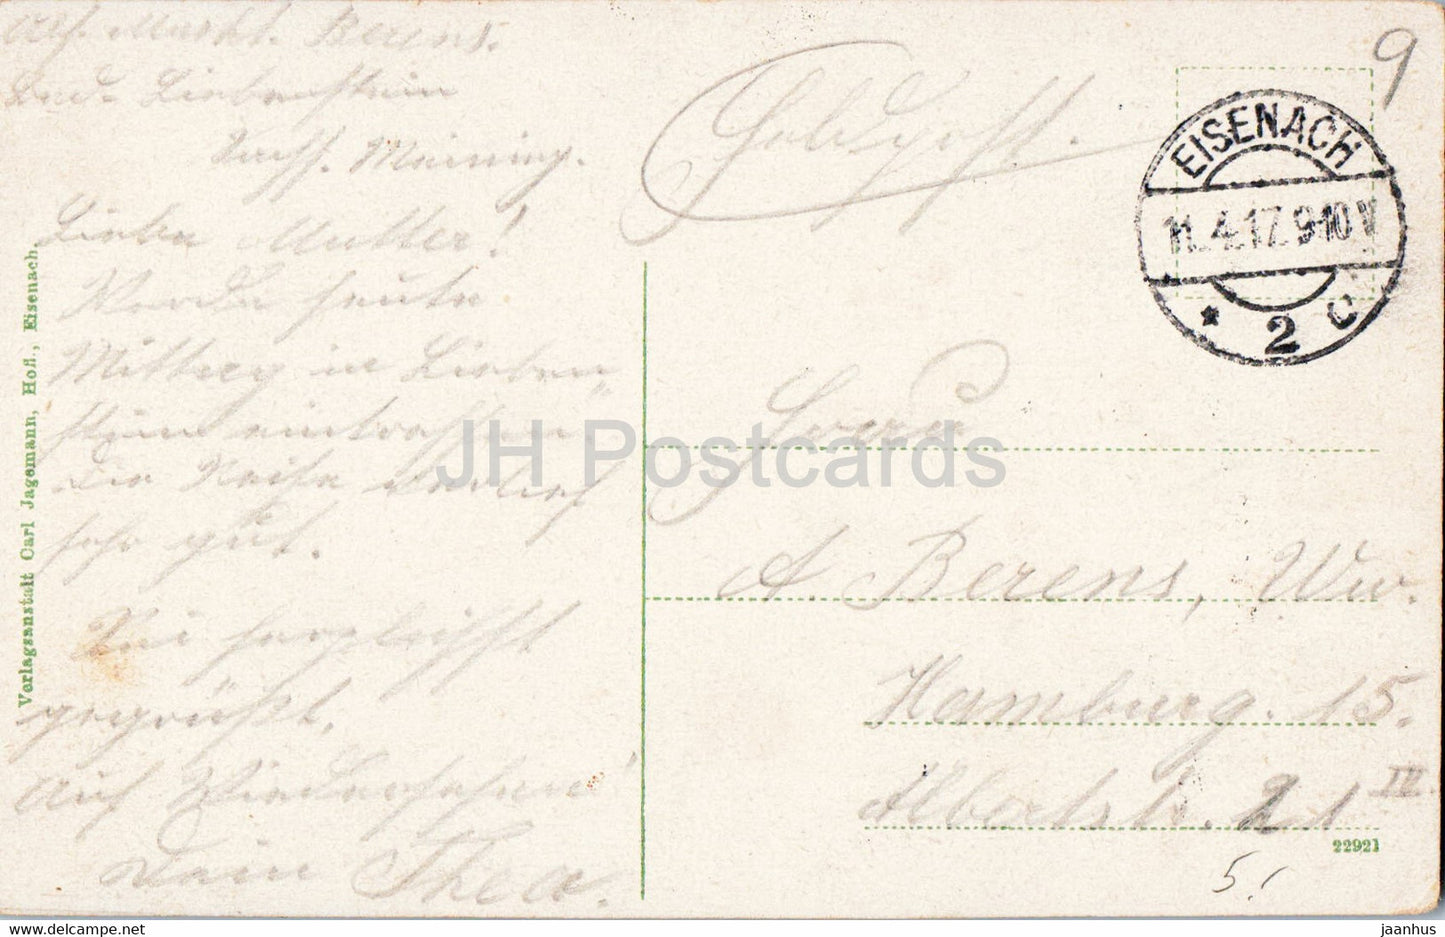 Eisenach - Das Lutherhaus - Feldpost - courrier militaire - 22921 - carte postale ancienne - 1917 - Allemagne - utilisé